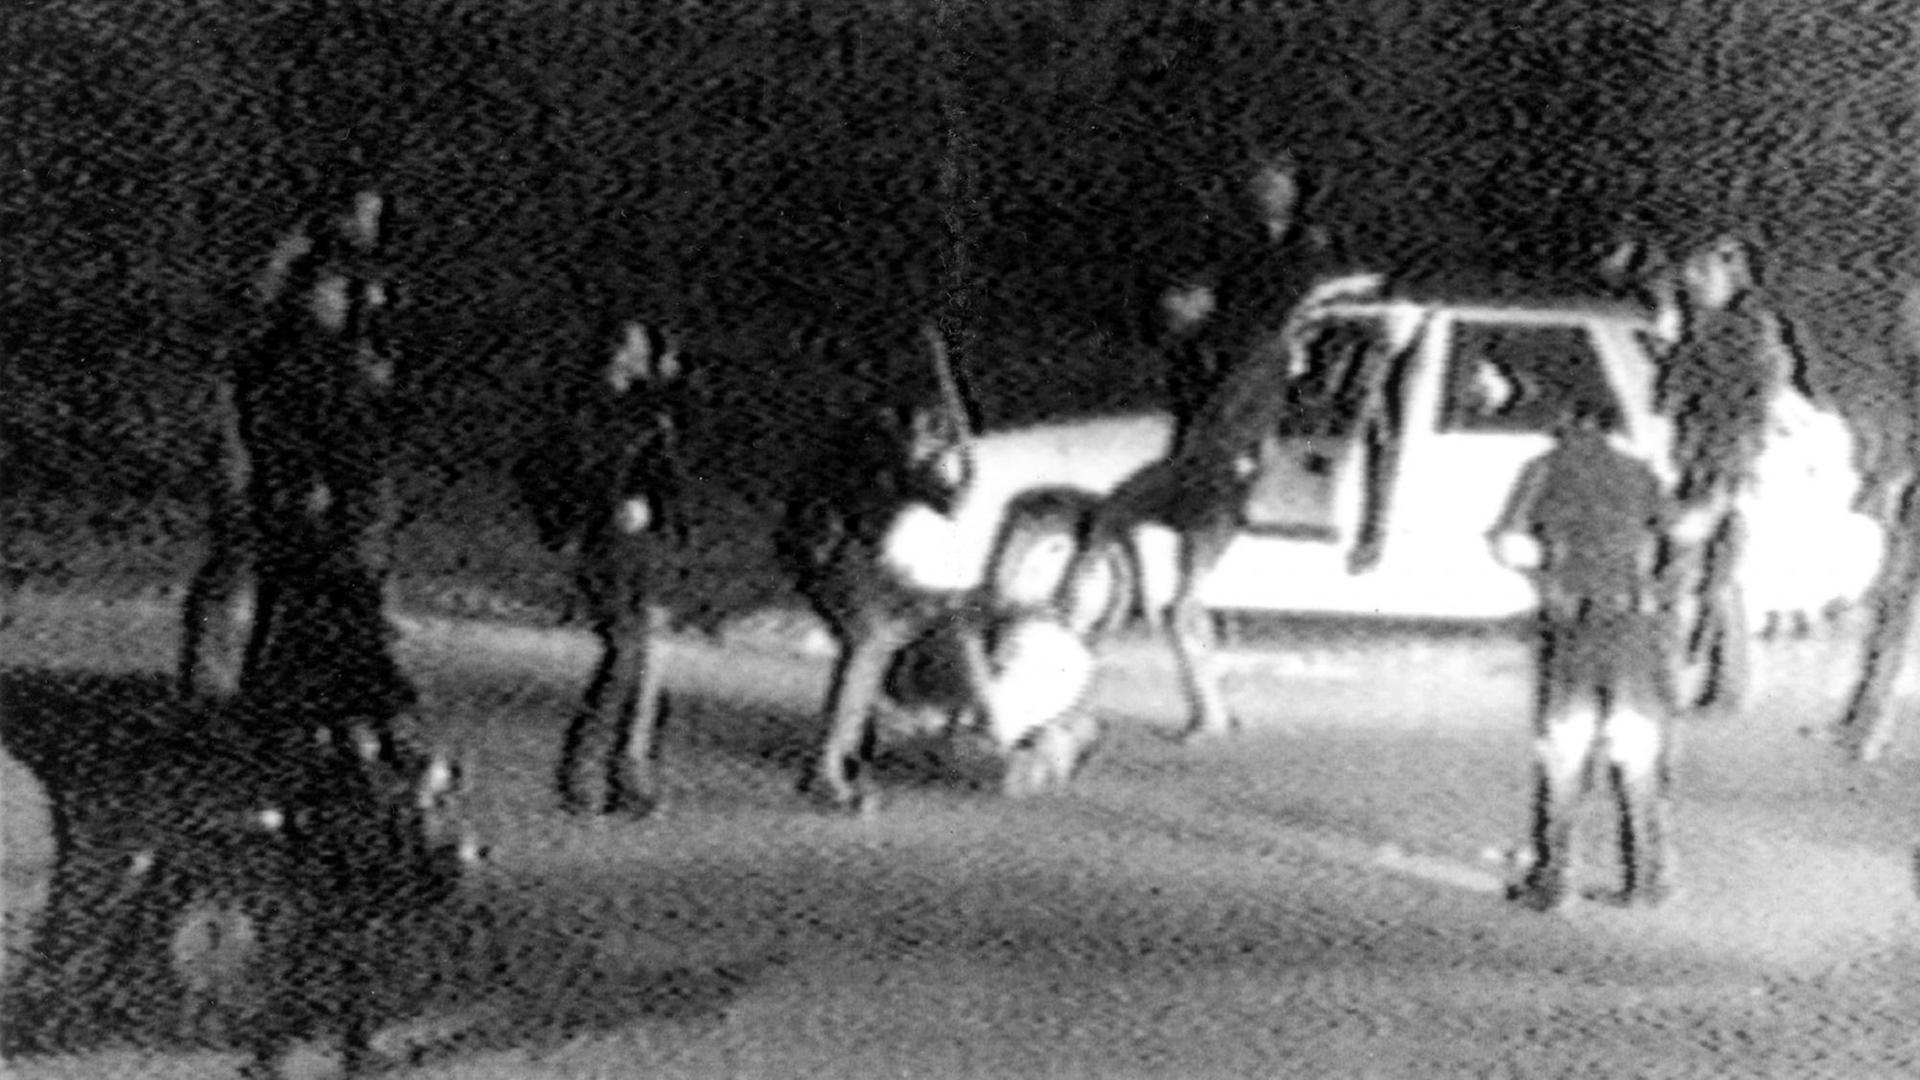 Grobkörnige Schwarz-Weiß-Aufnahme: Polizisten schlagen und treten auf einen am Boden liegenden Mann. Es handelt sich um Rodney King.